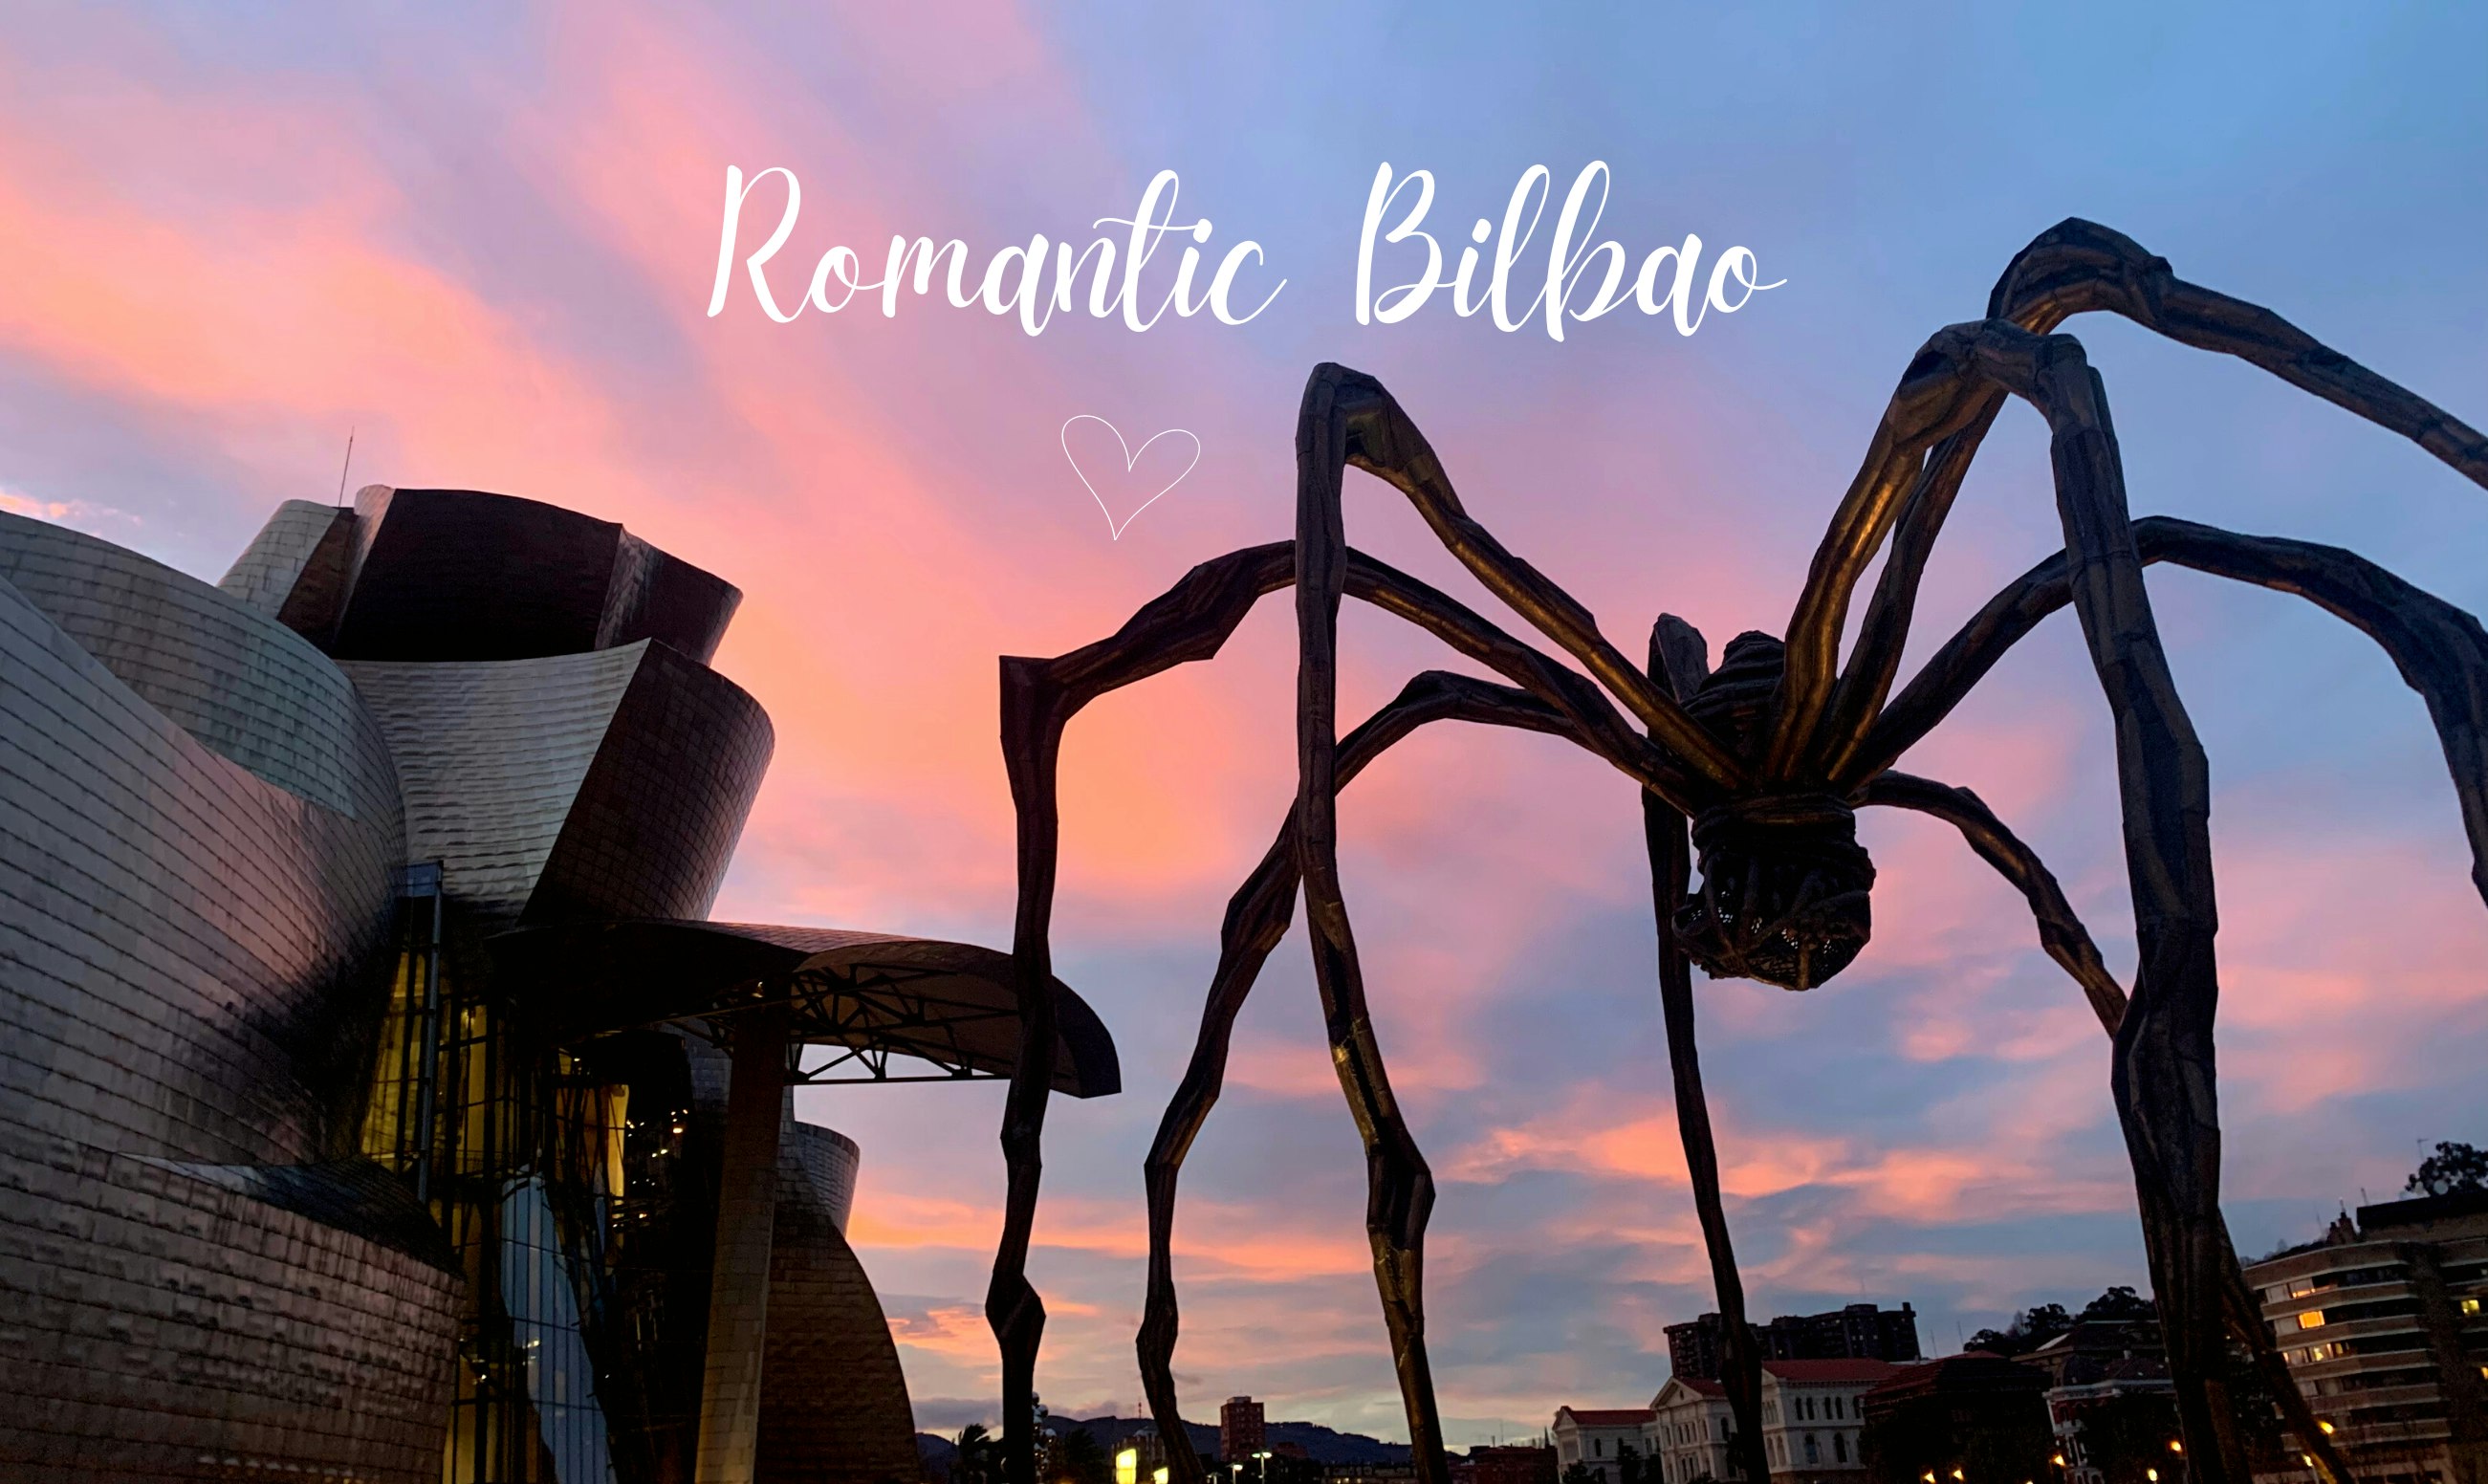 Romantic Bilbao: Year of Love